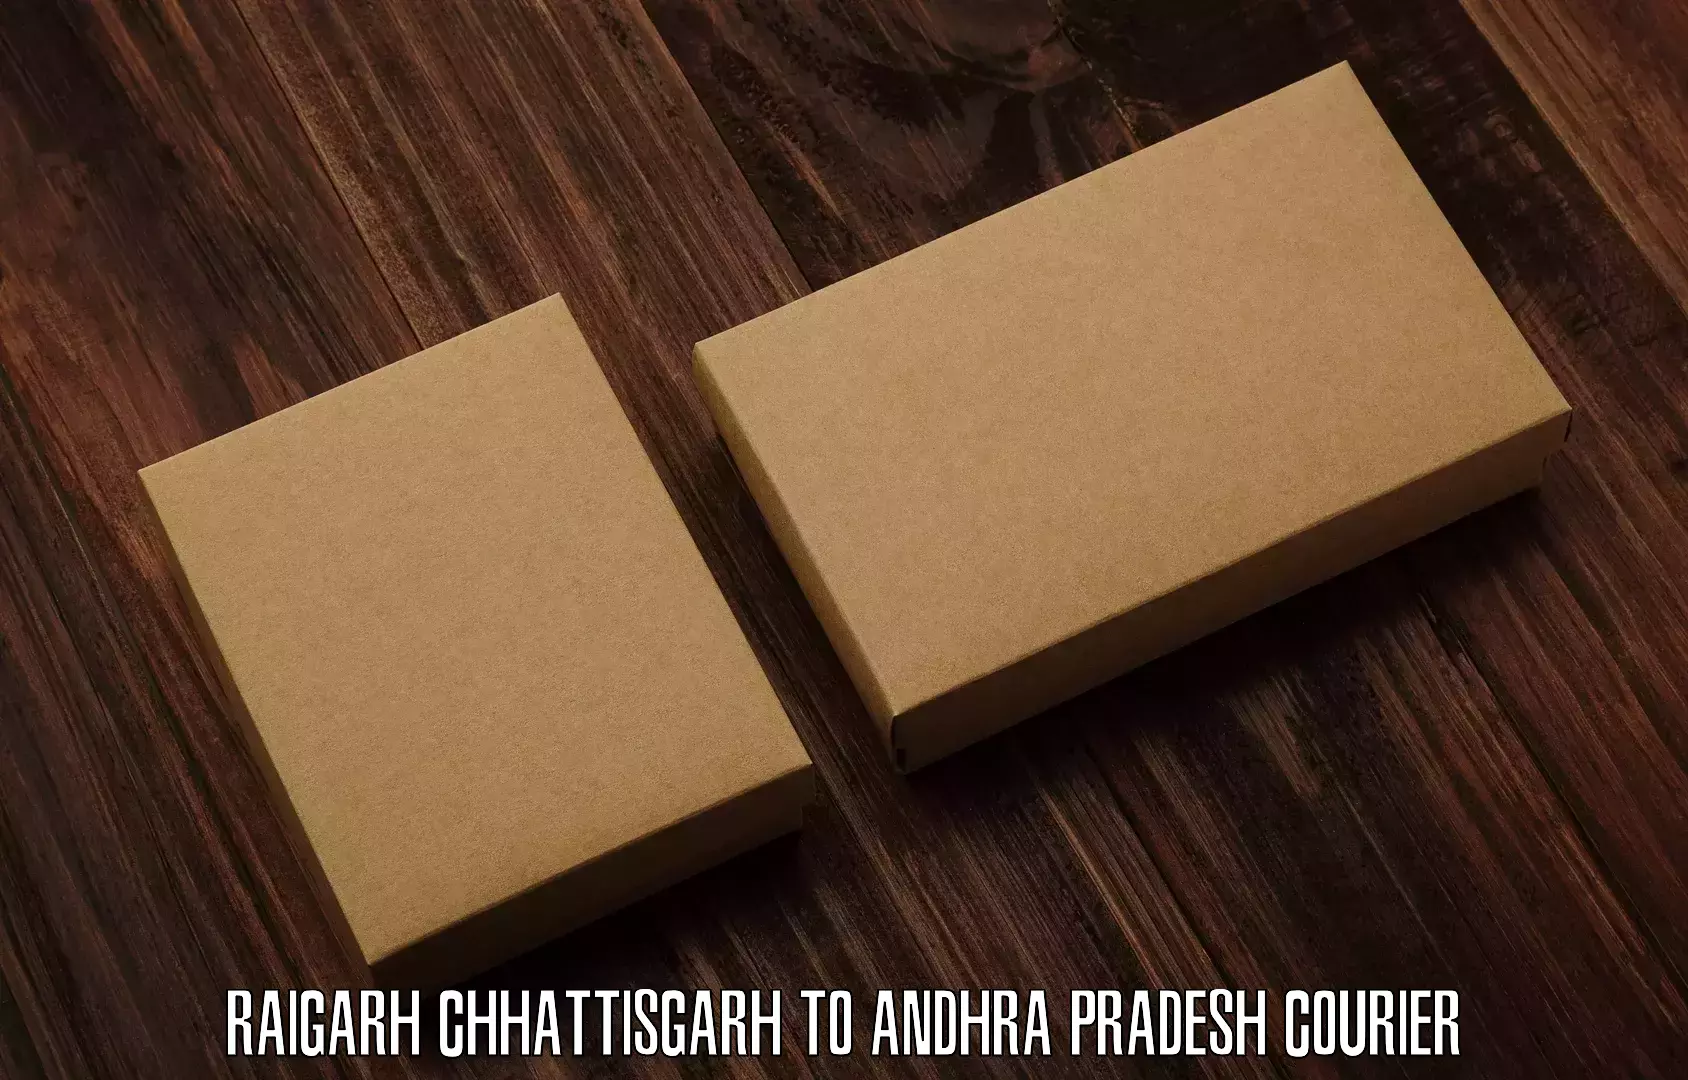 Parcel service for businesses Raigarh Chhattisgarh to East Godavari